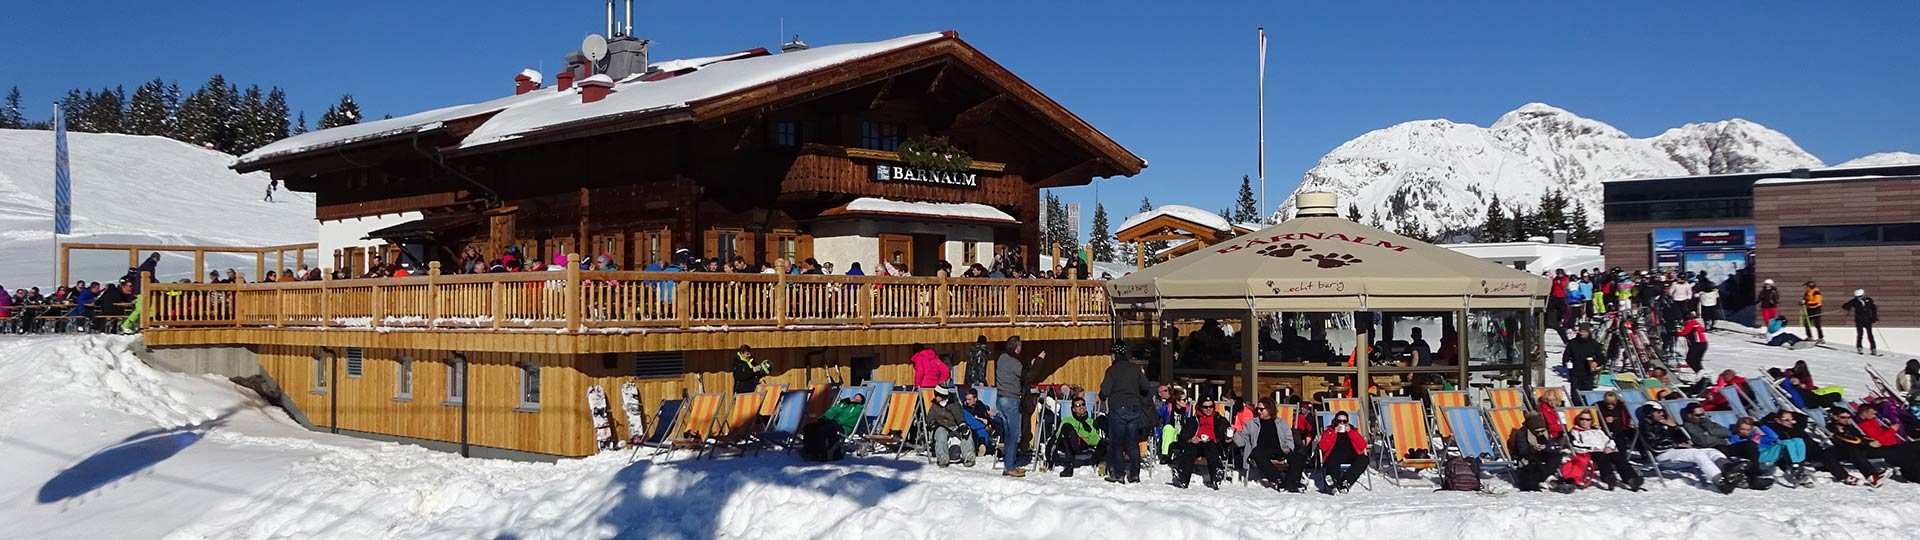 Berggasthof Bärnalm | Familiäre Gastlichkeit auf 1580m